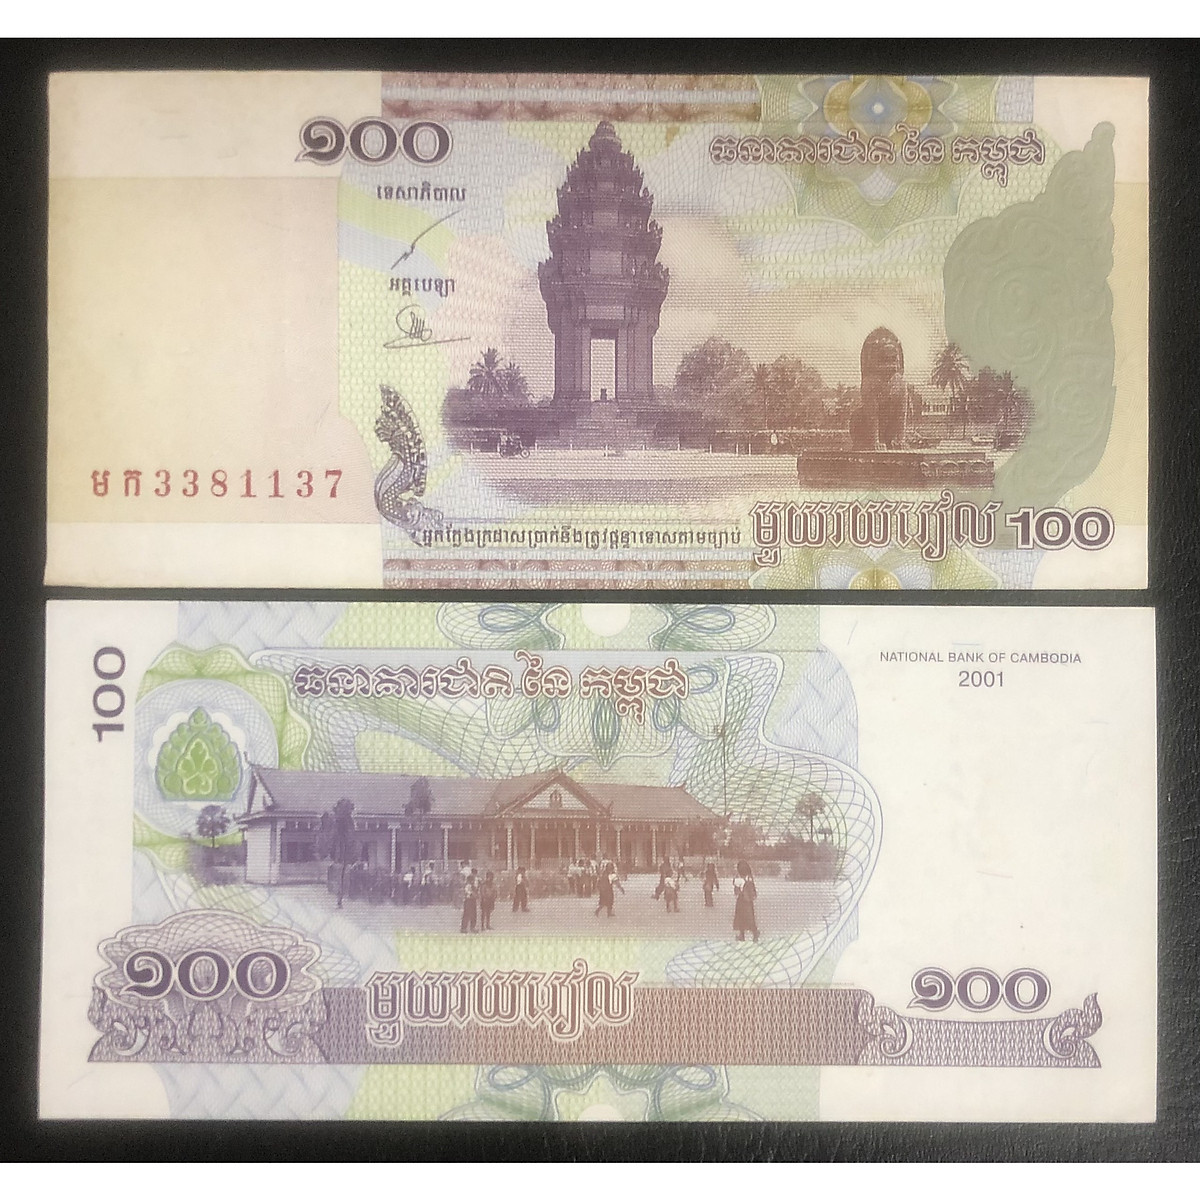 tiền thế giới, 100 Riels Campuchia, quốc gia Đông Nam Á sưu tầm - Tiền mới keng 100% - Tặng túi nilon bảo quản